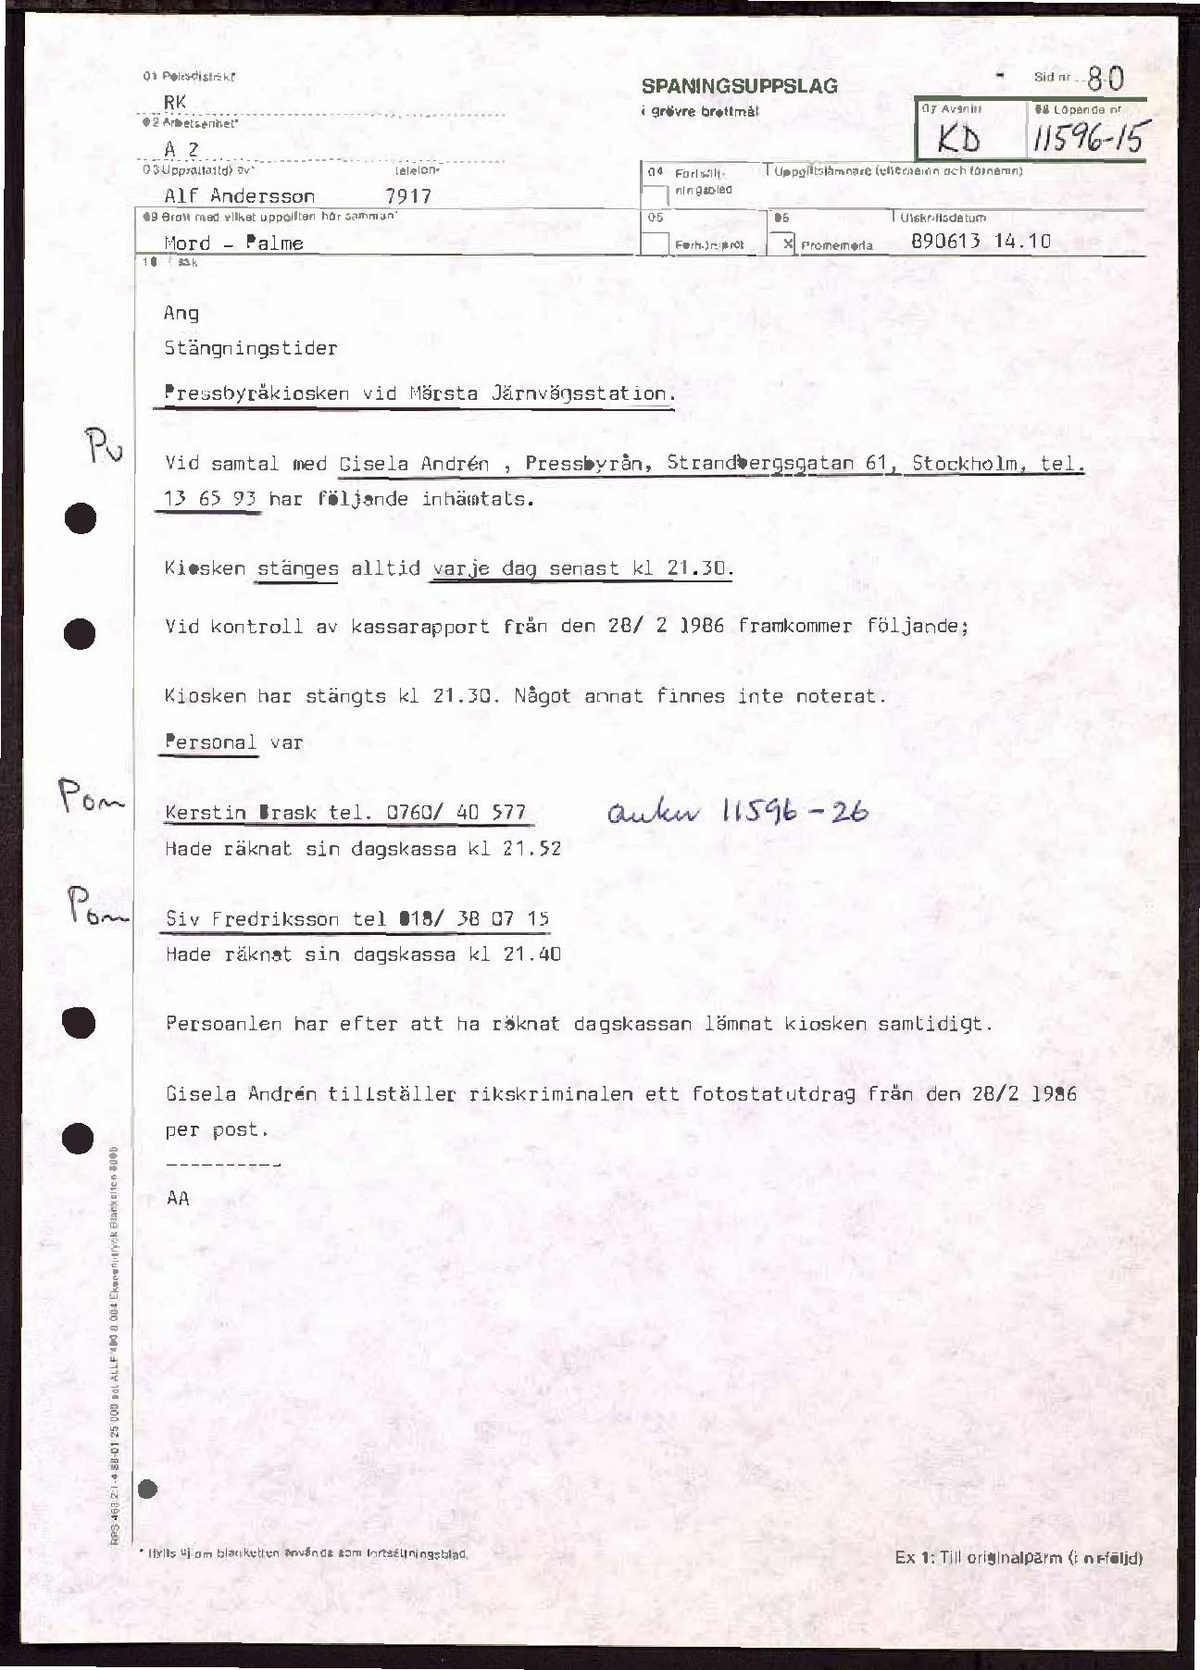 Pol-1989-06-13 KD11596-15 Pressbyrån Märsta stängningstider.pdf